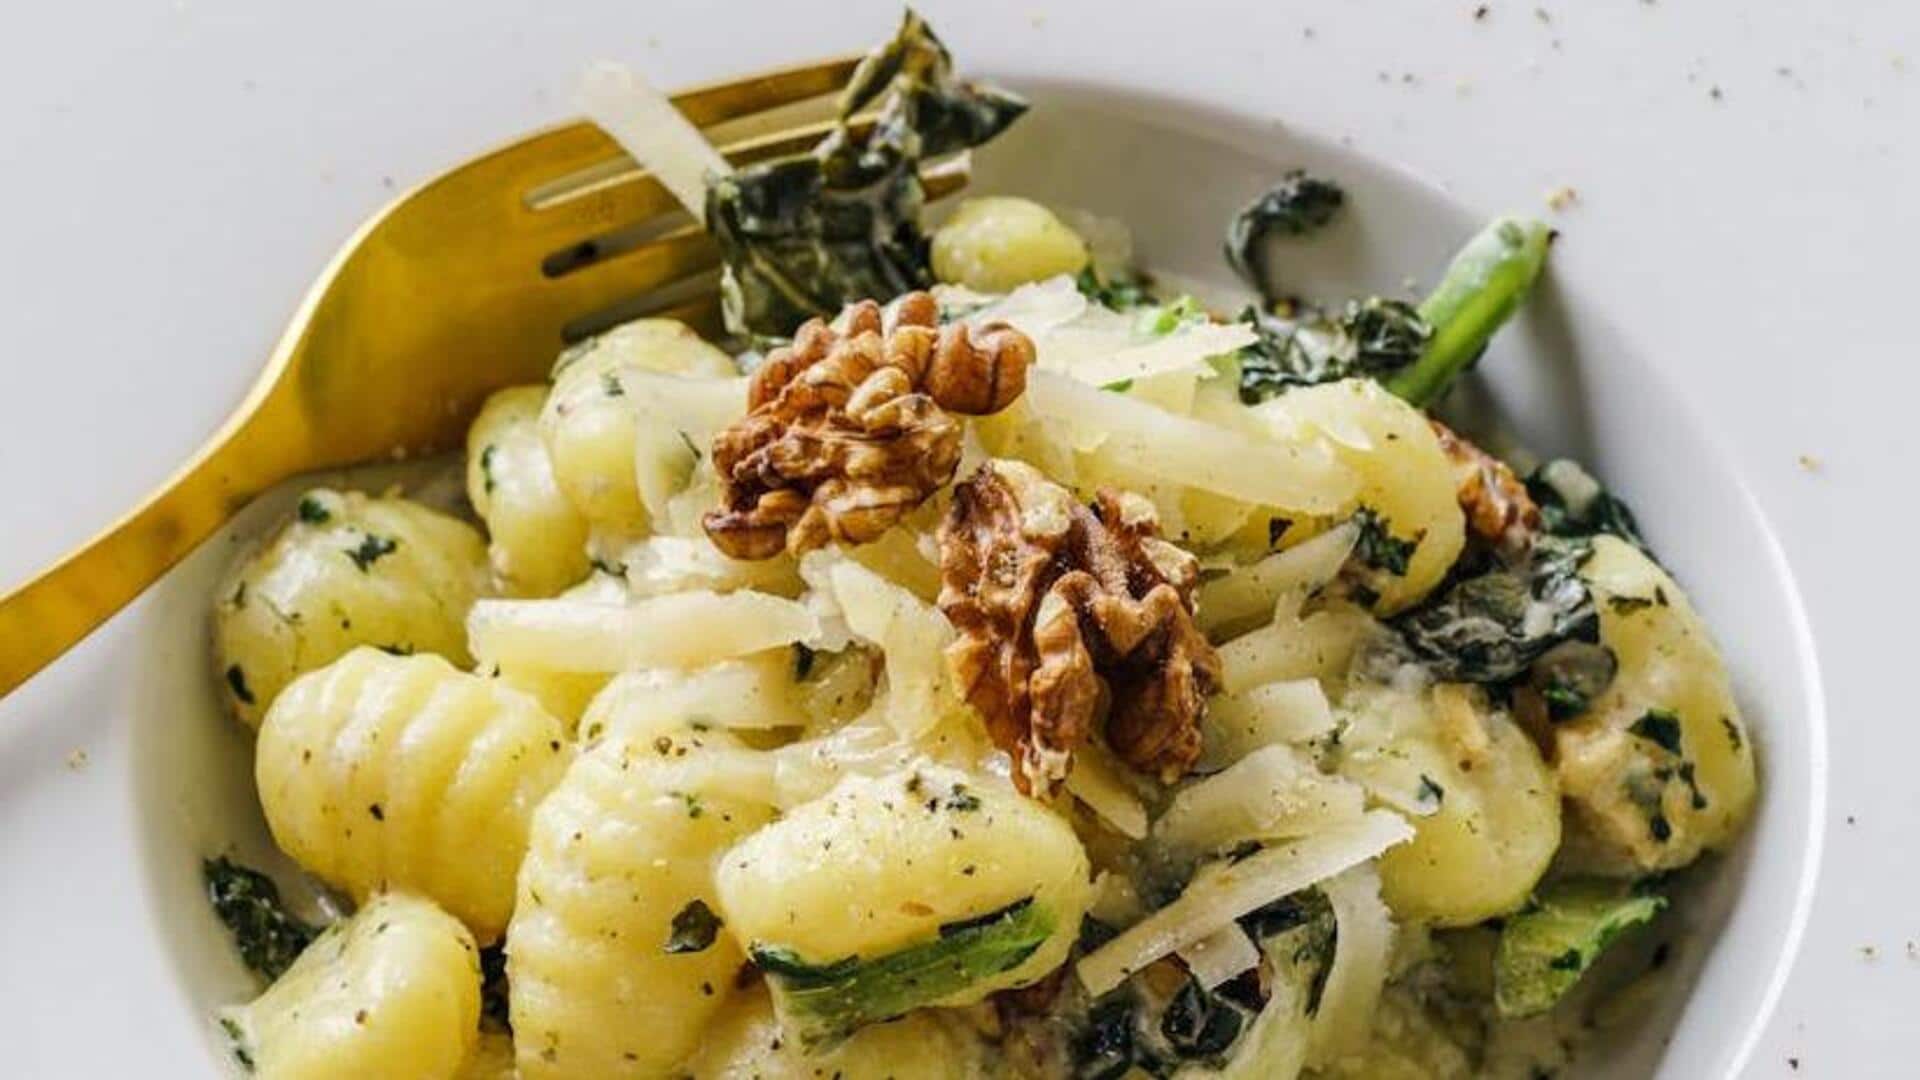 Try this Italian pesto gnocchi recipe